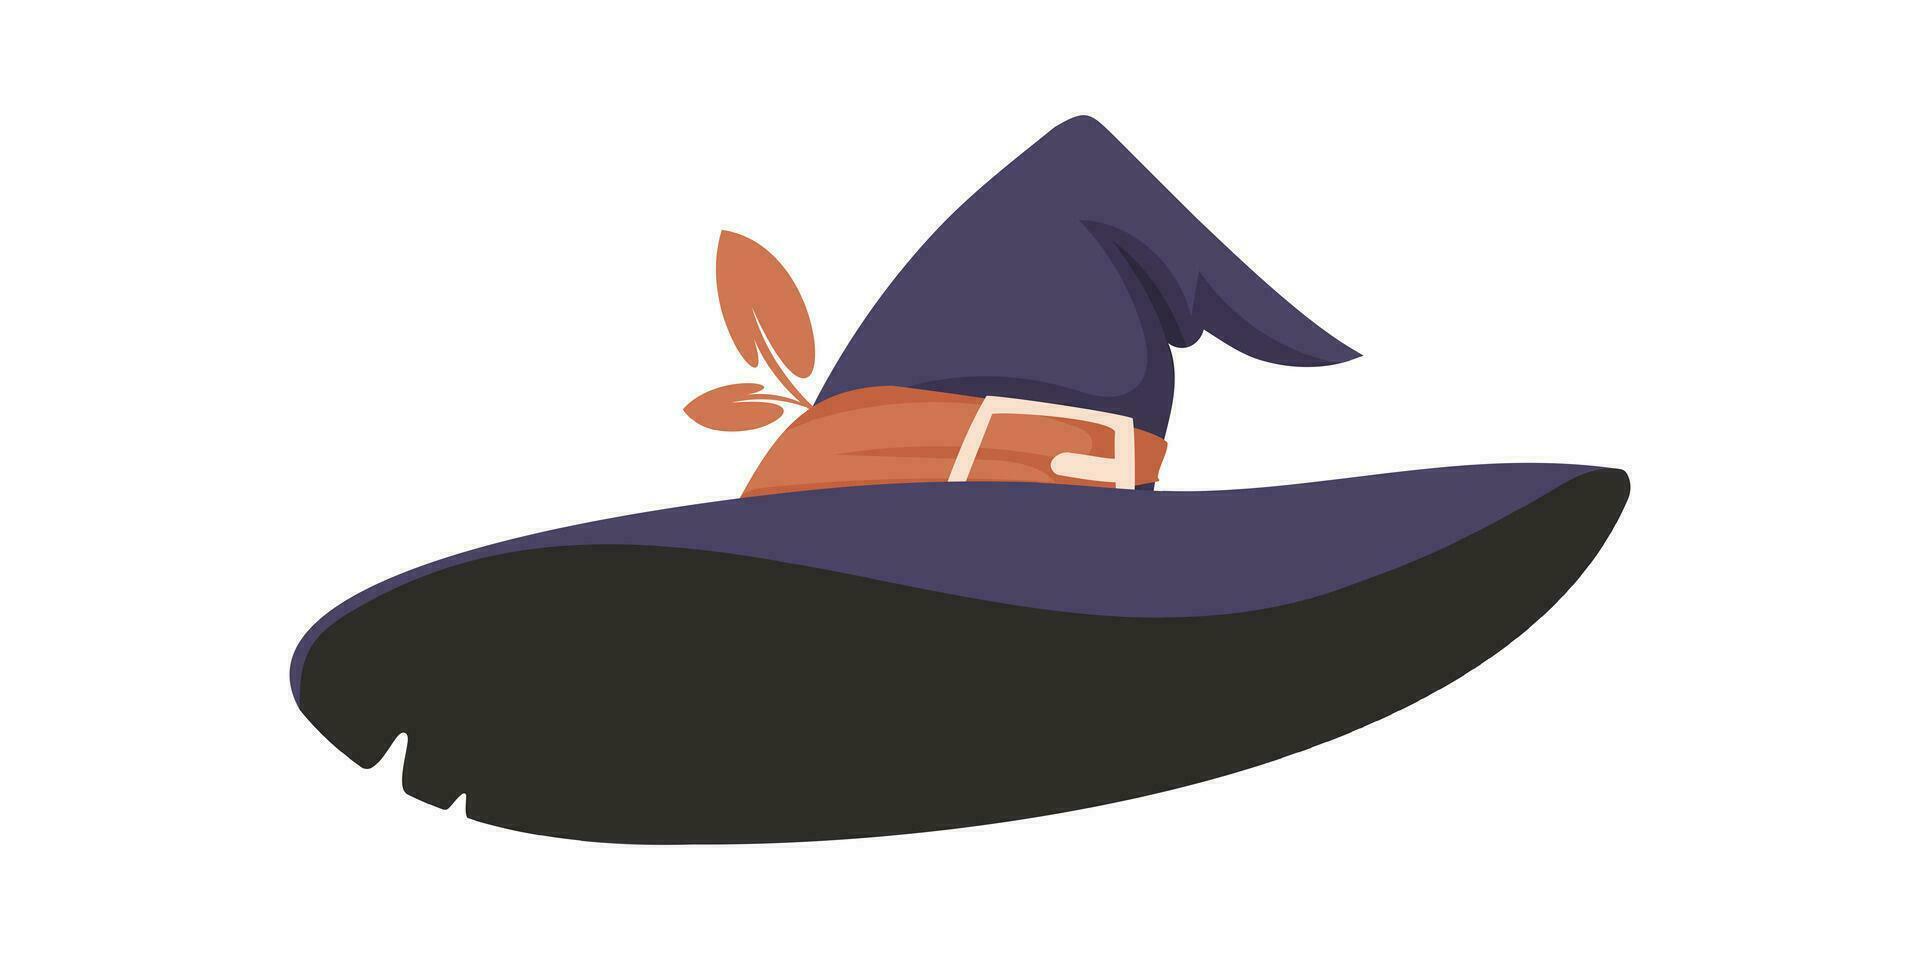 une sorcière chapeau est une vraiment grand chapeau cette sorcières mettre sur leur têtes. dessin animé style, vecteur illustration